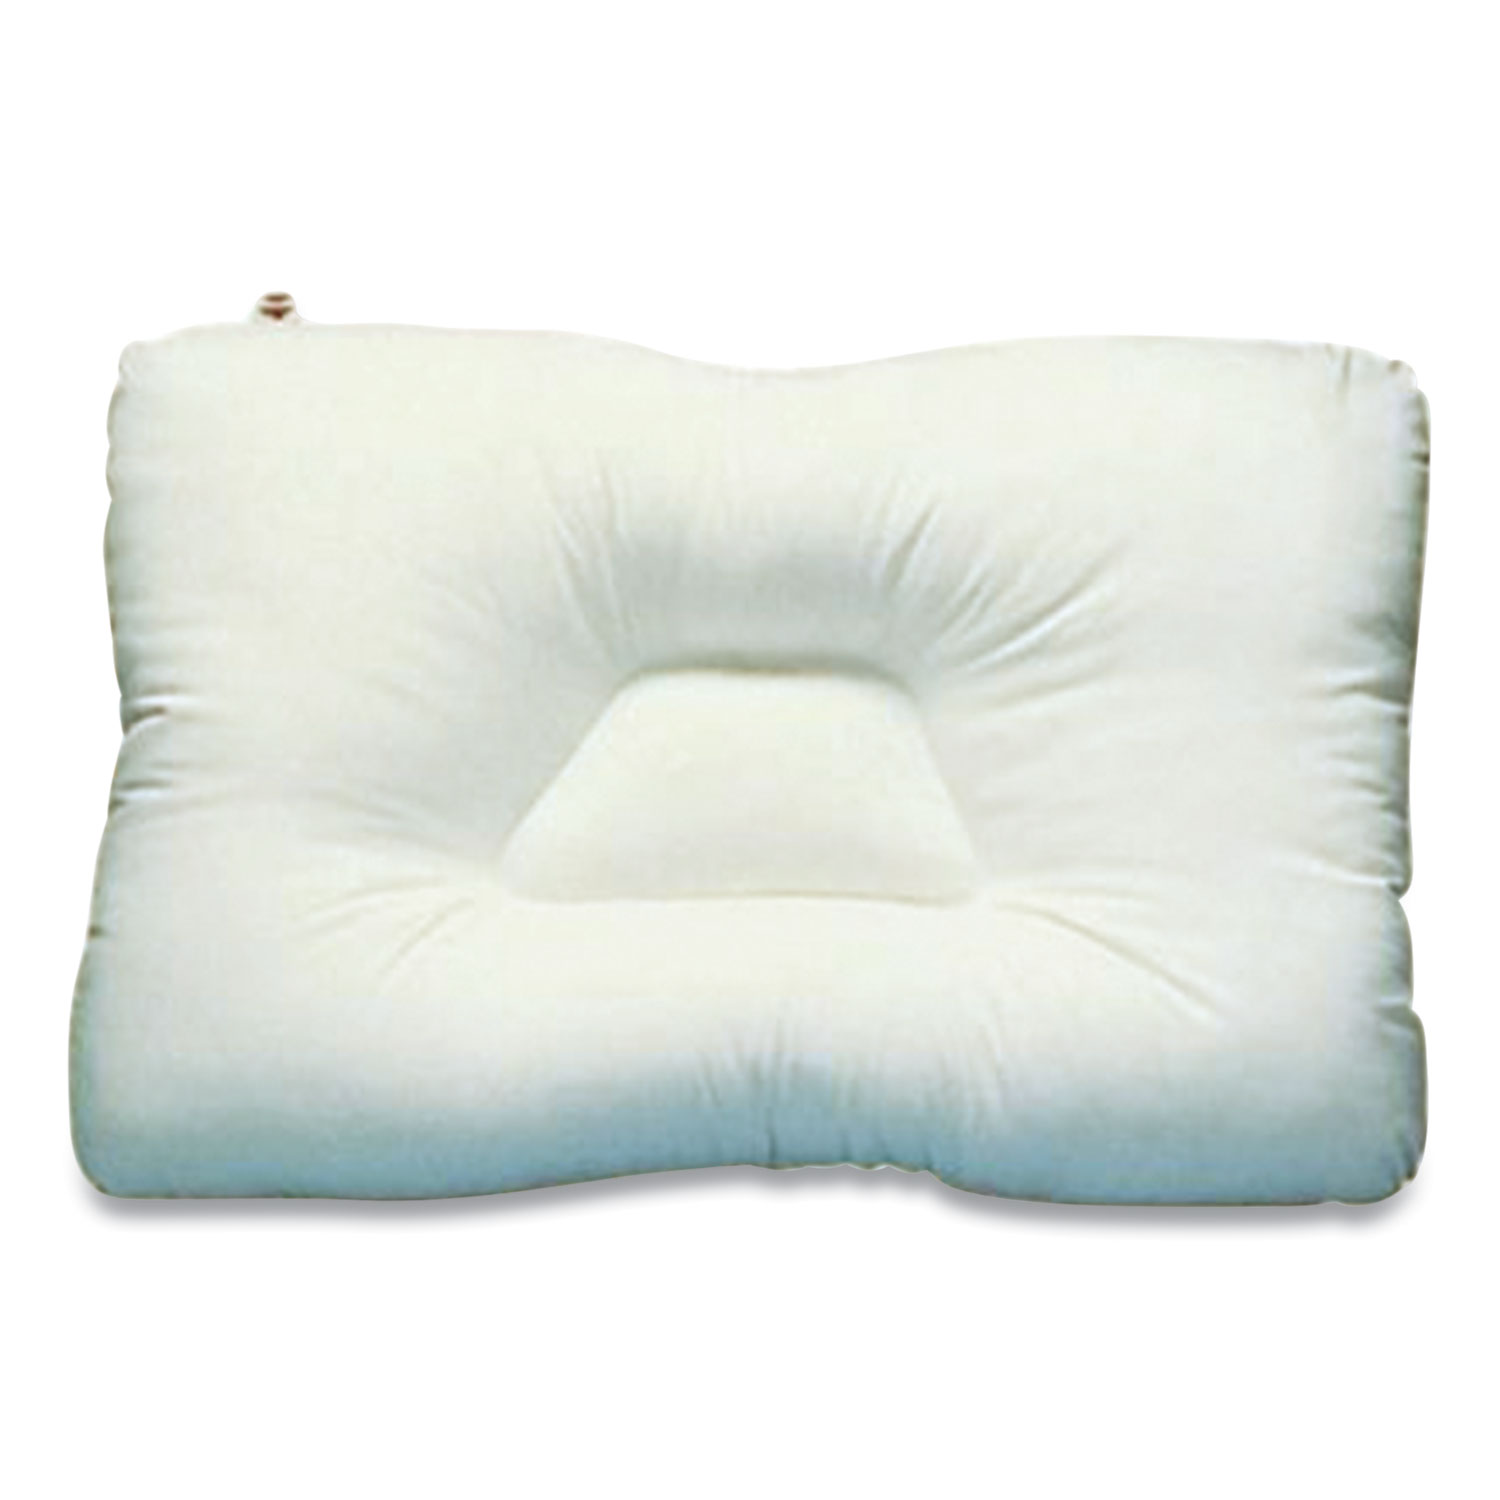  Core Products FIB241 D-Core Cervical Pillow, Mid-Size, 23 x 15, White (COE716463) 